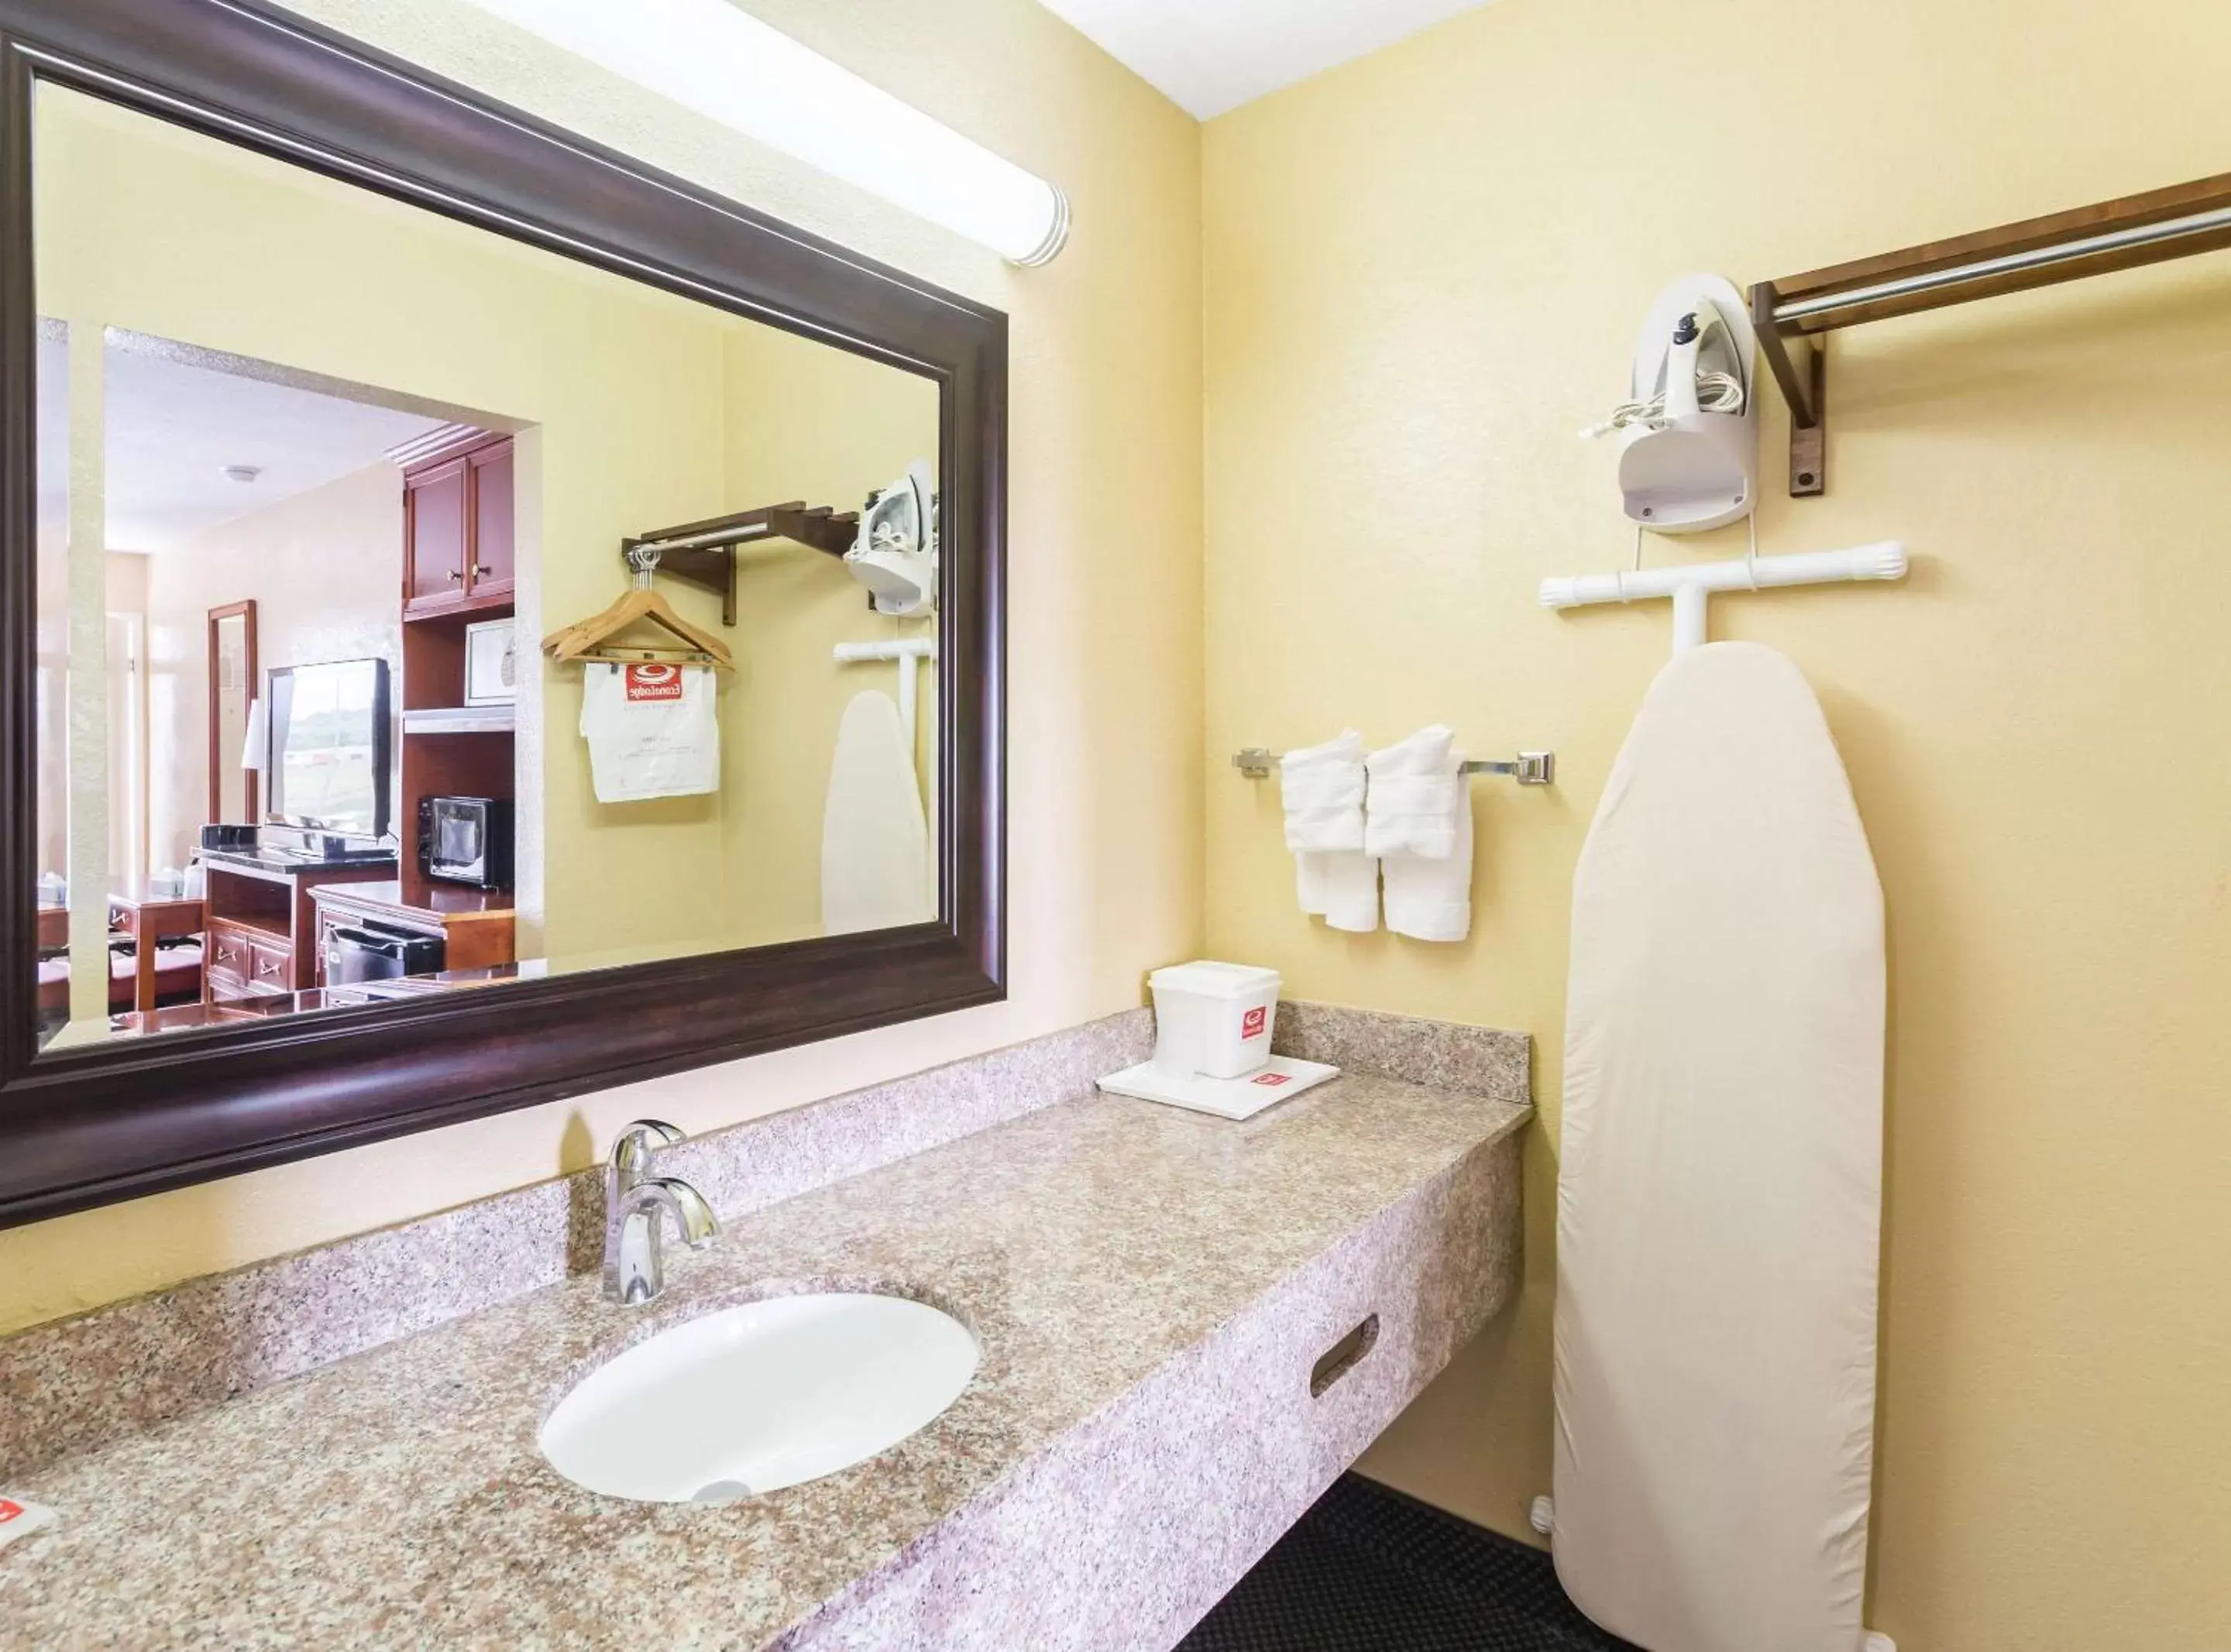 Bedroom, Bathroom in Econo Lodge White Pine Morristown I-81 & I-40 Split